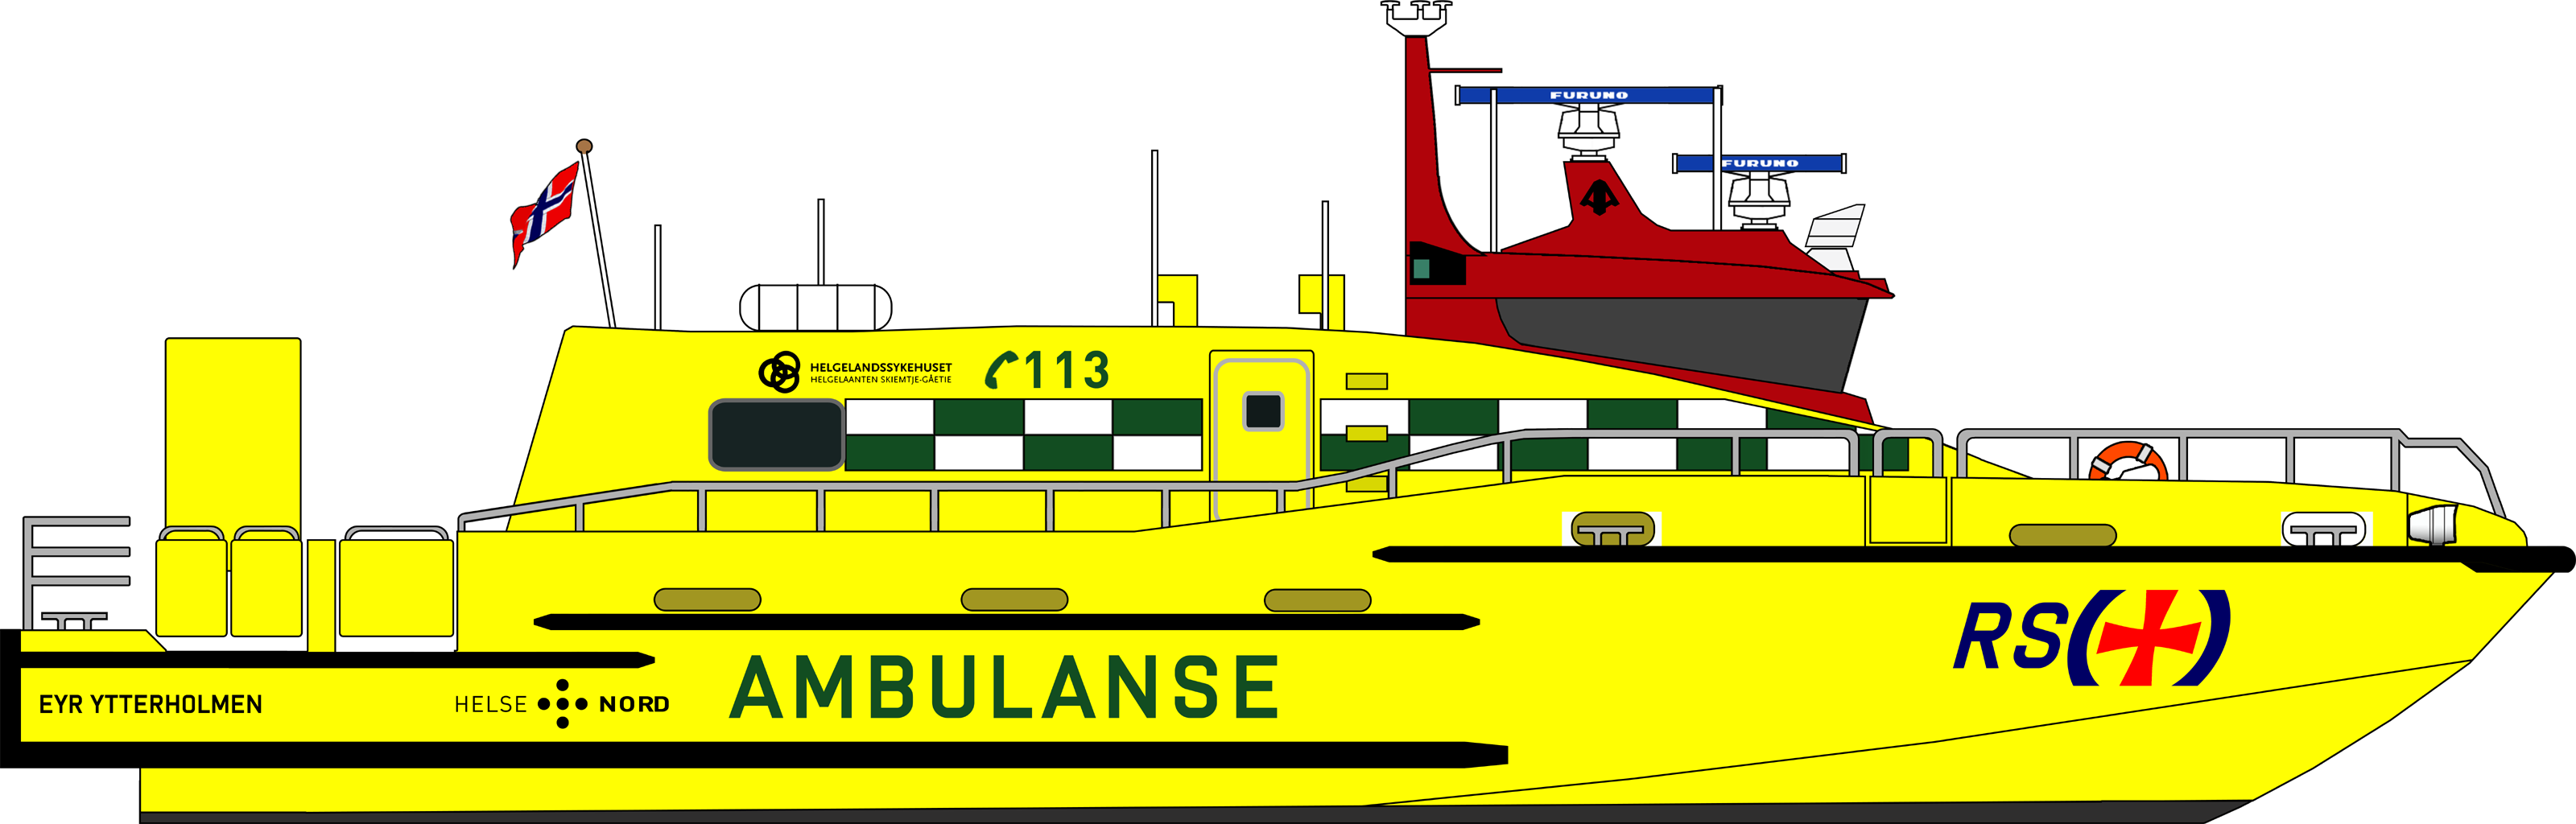 Ambulansebåt